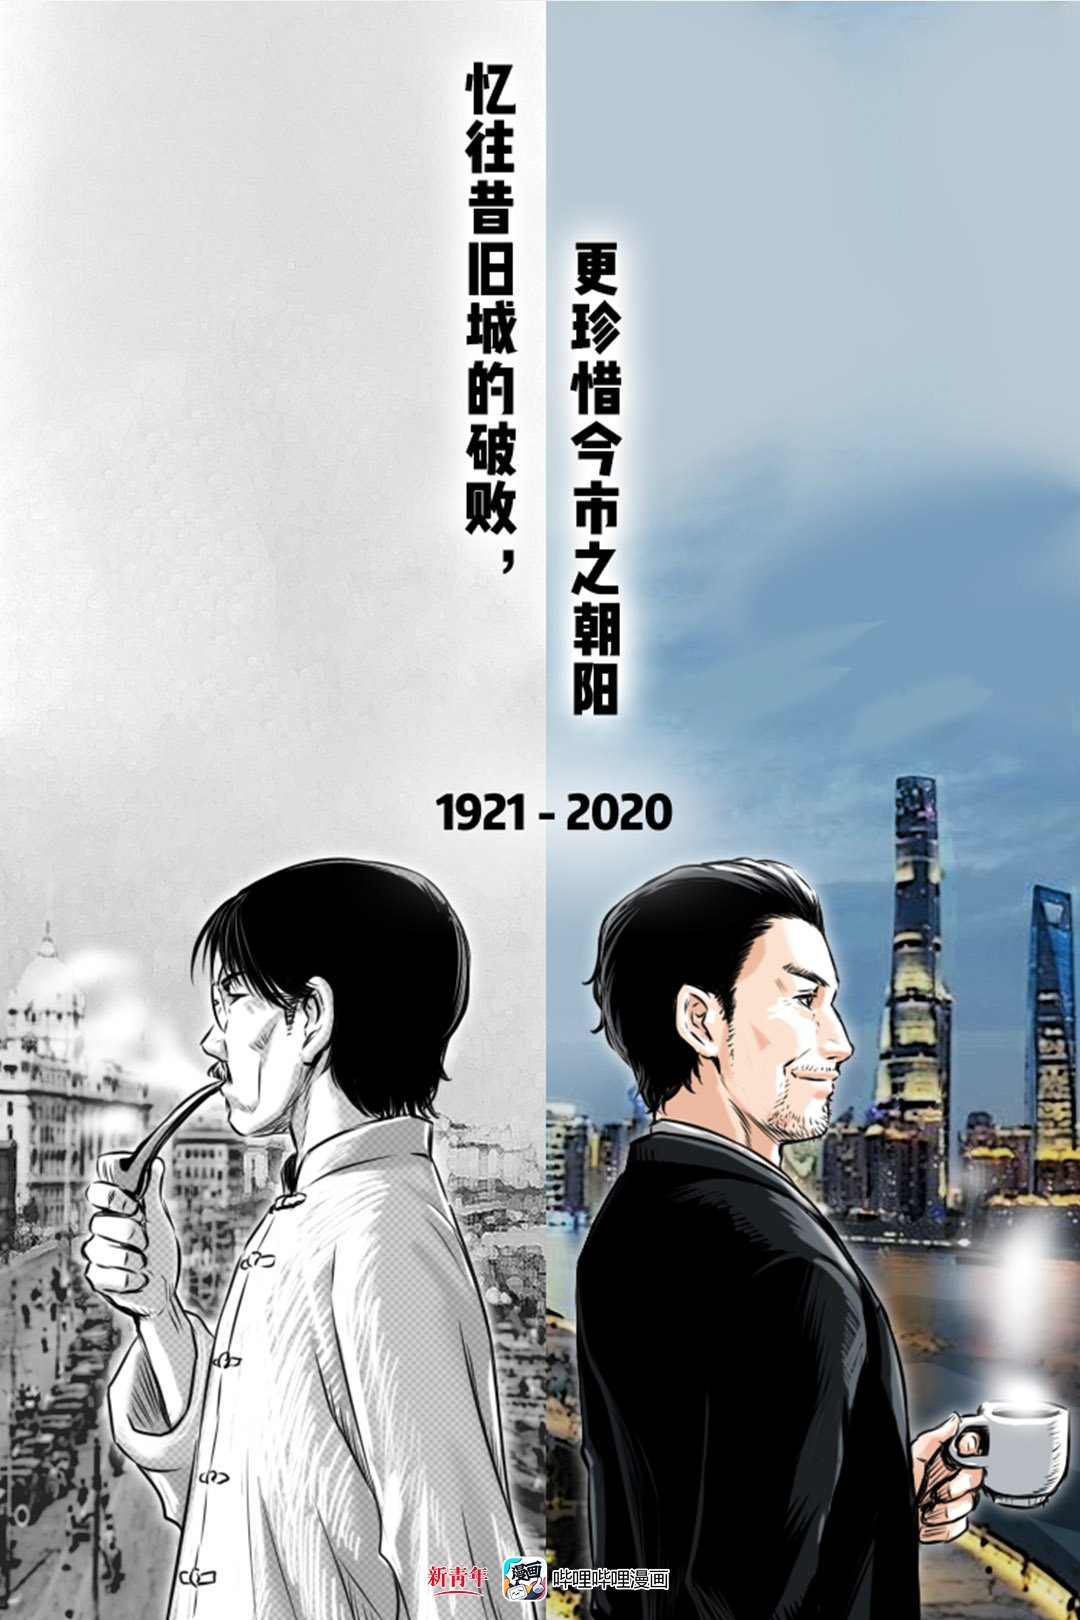 1921→2020